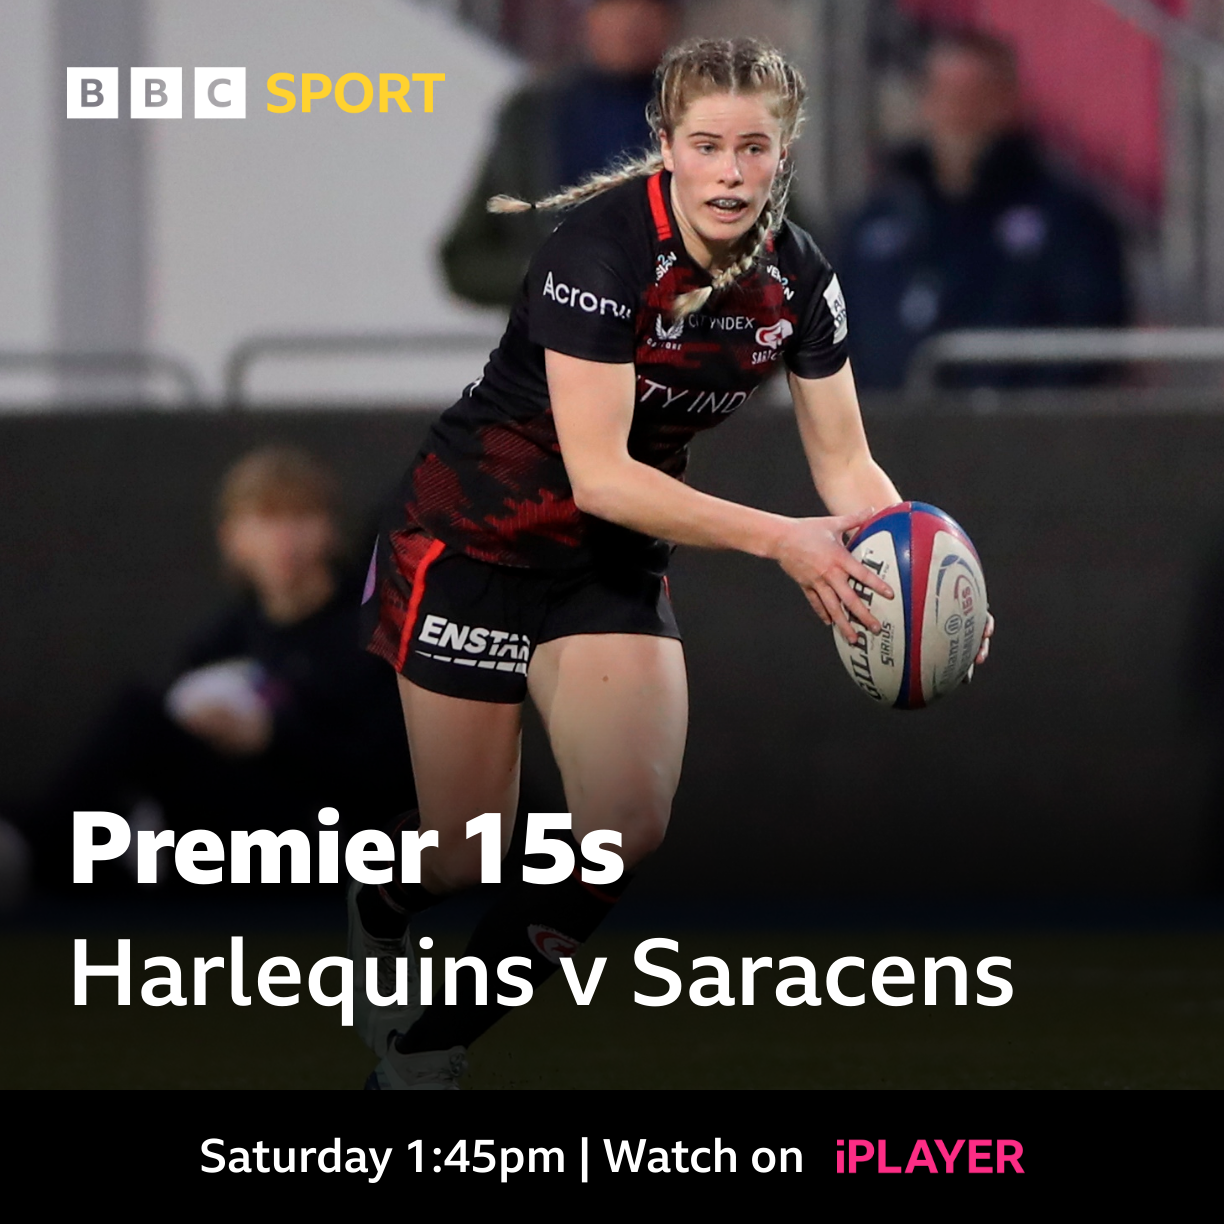 Premier 15s Watch Premier 15s coverage on BBC iPlayer Harlequins v Saracens and listen to Exeter v Worcester